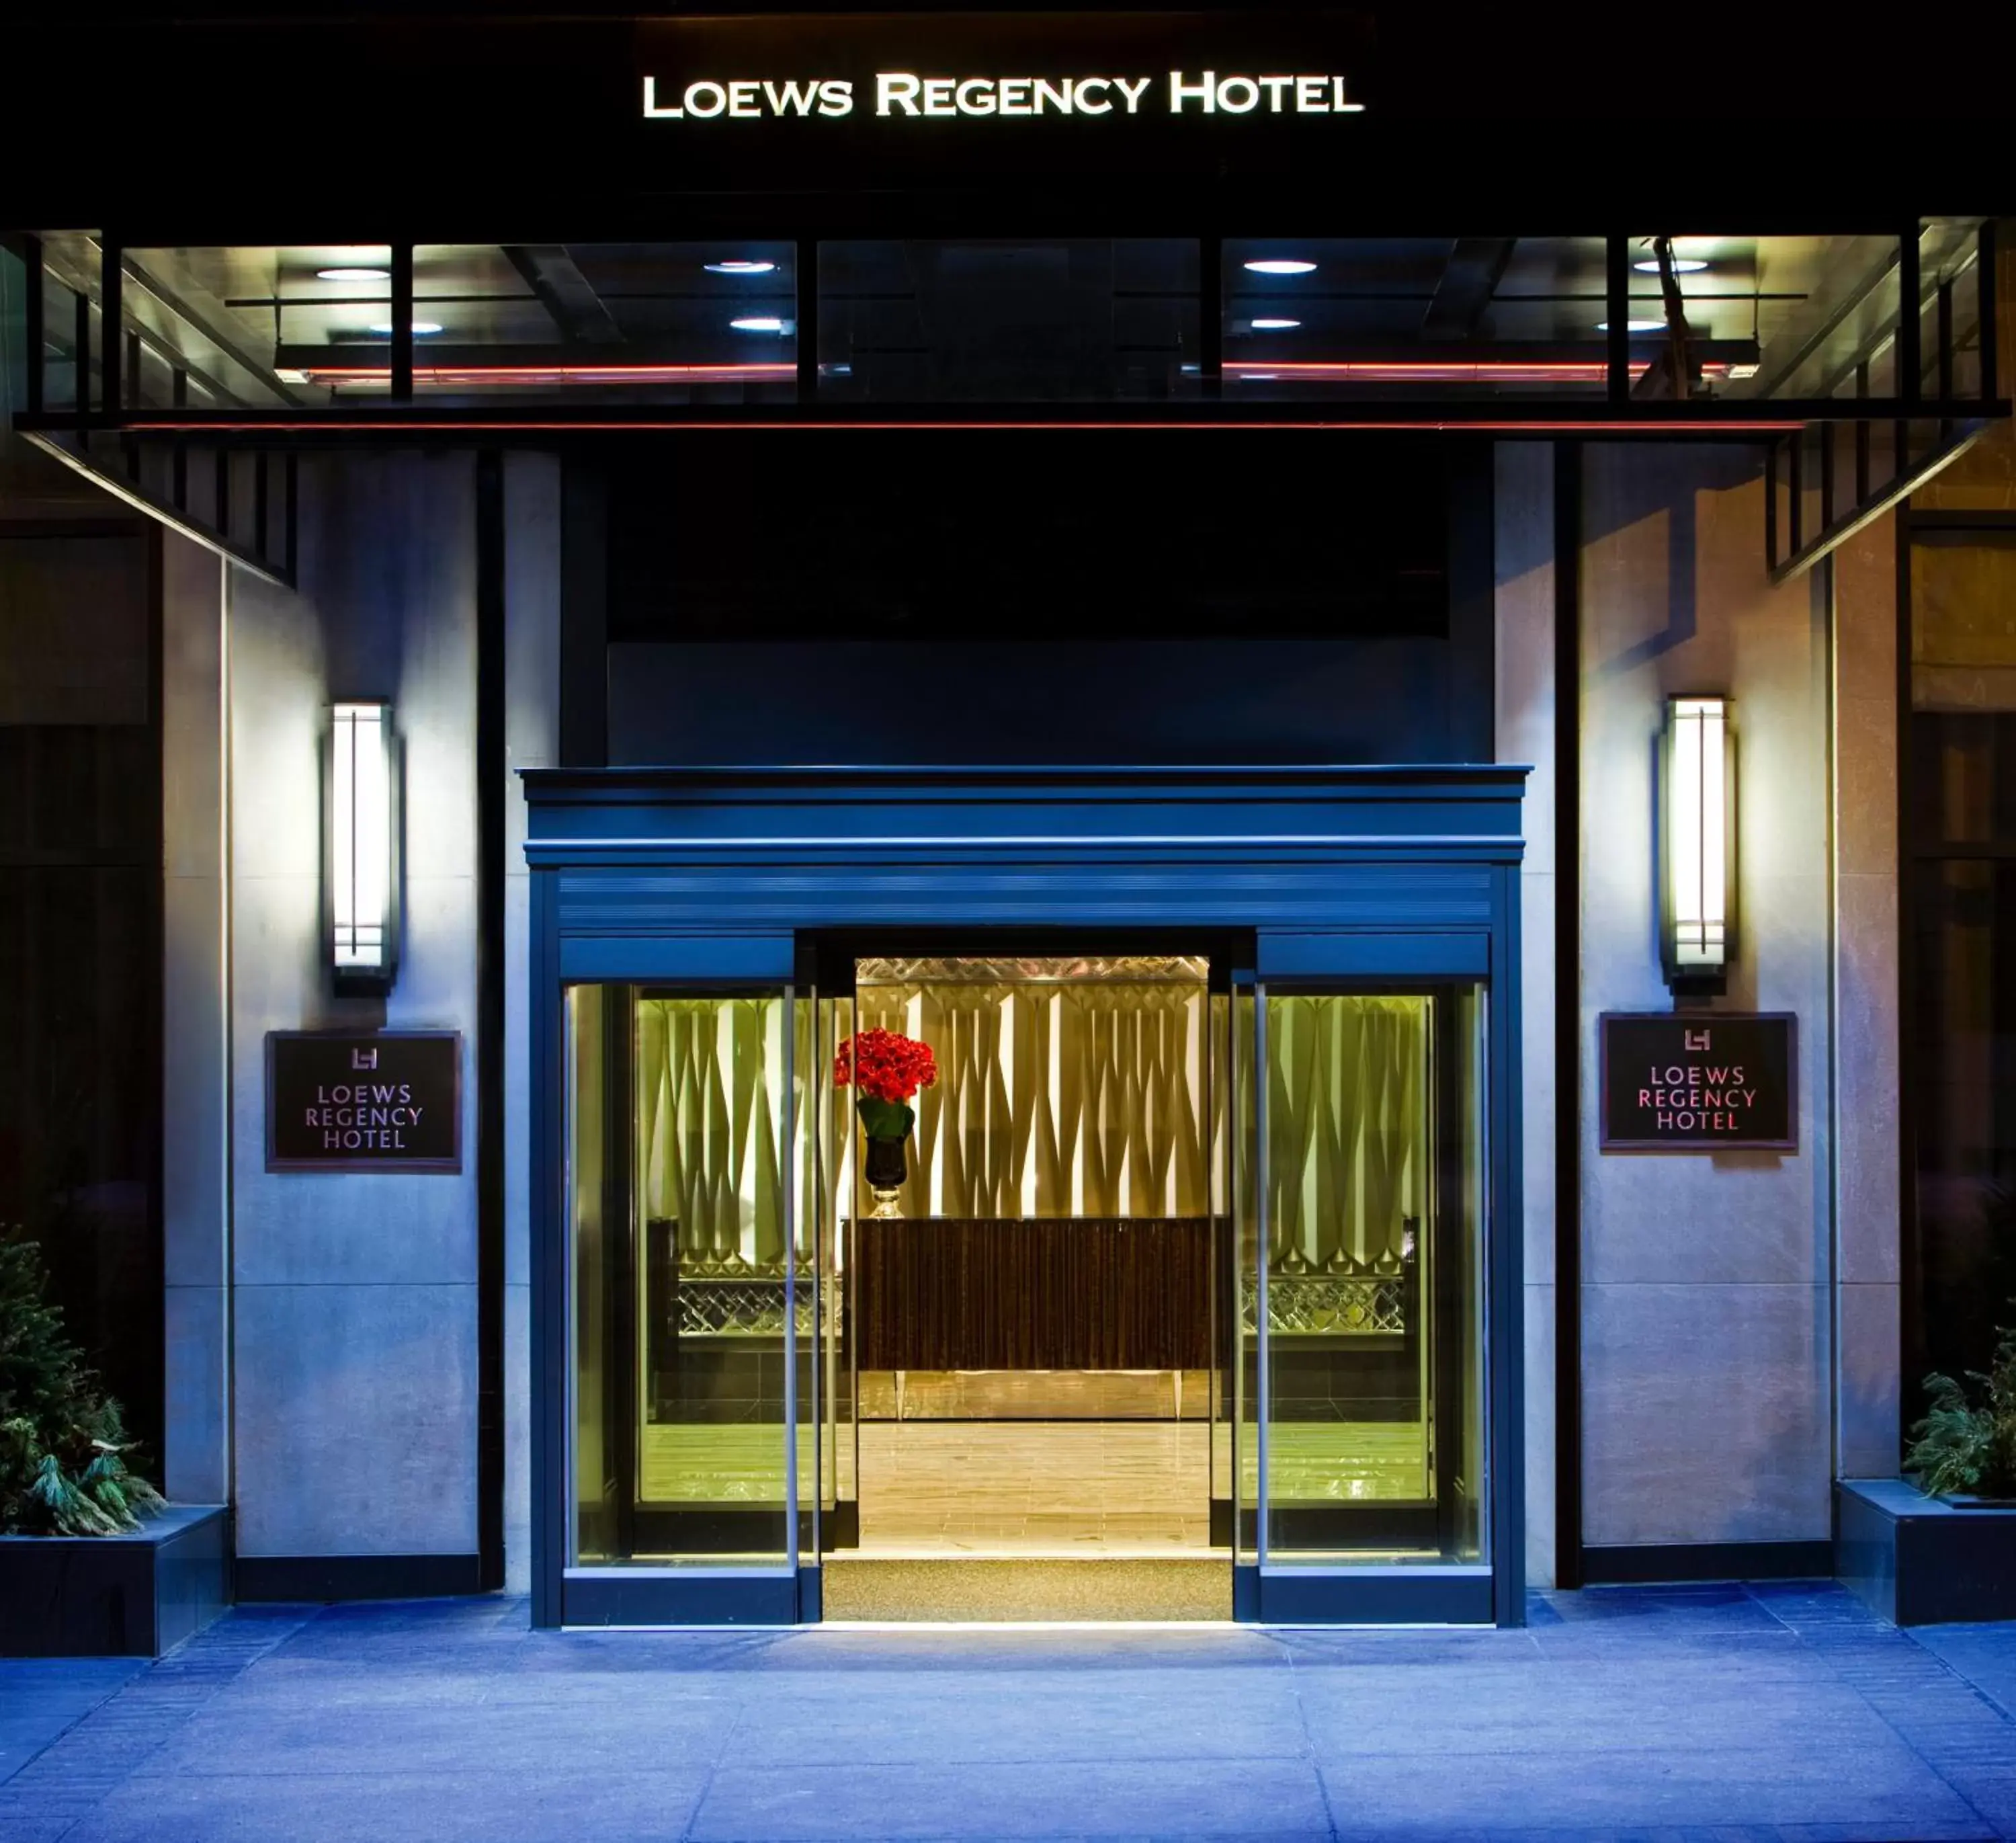 Property building in Loews Regency New York Hotel